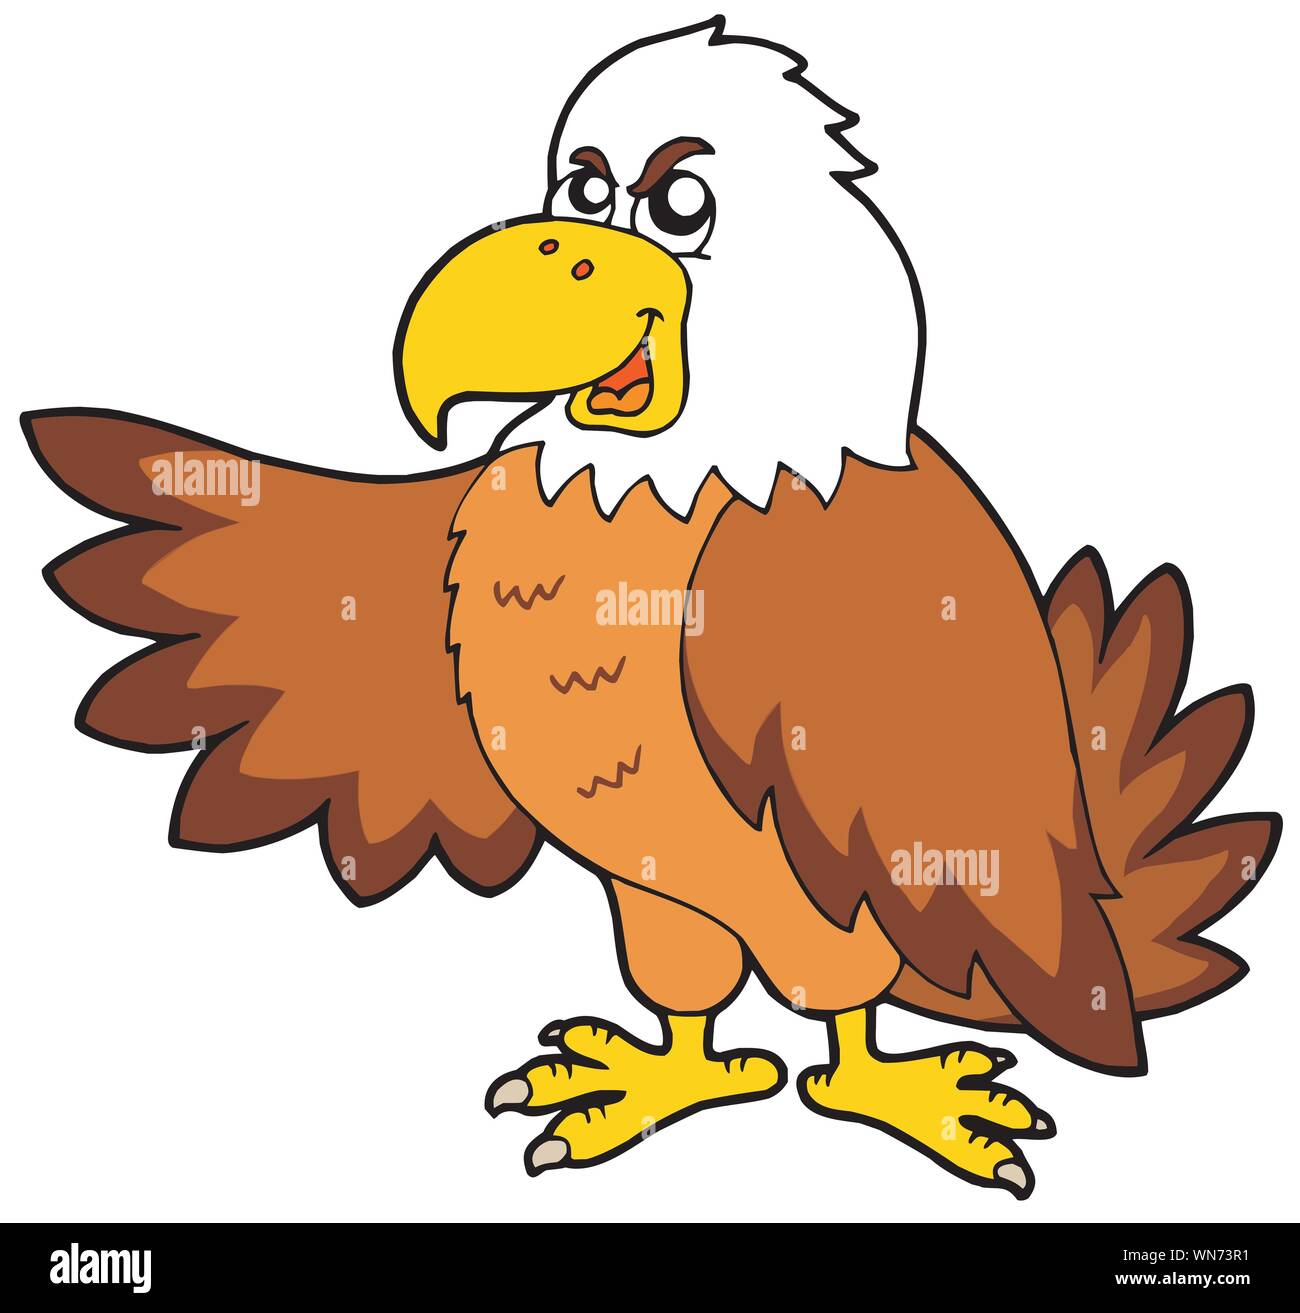 Cartoon eagle claw Banque d'images détourées - Page 2 - Alamy